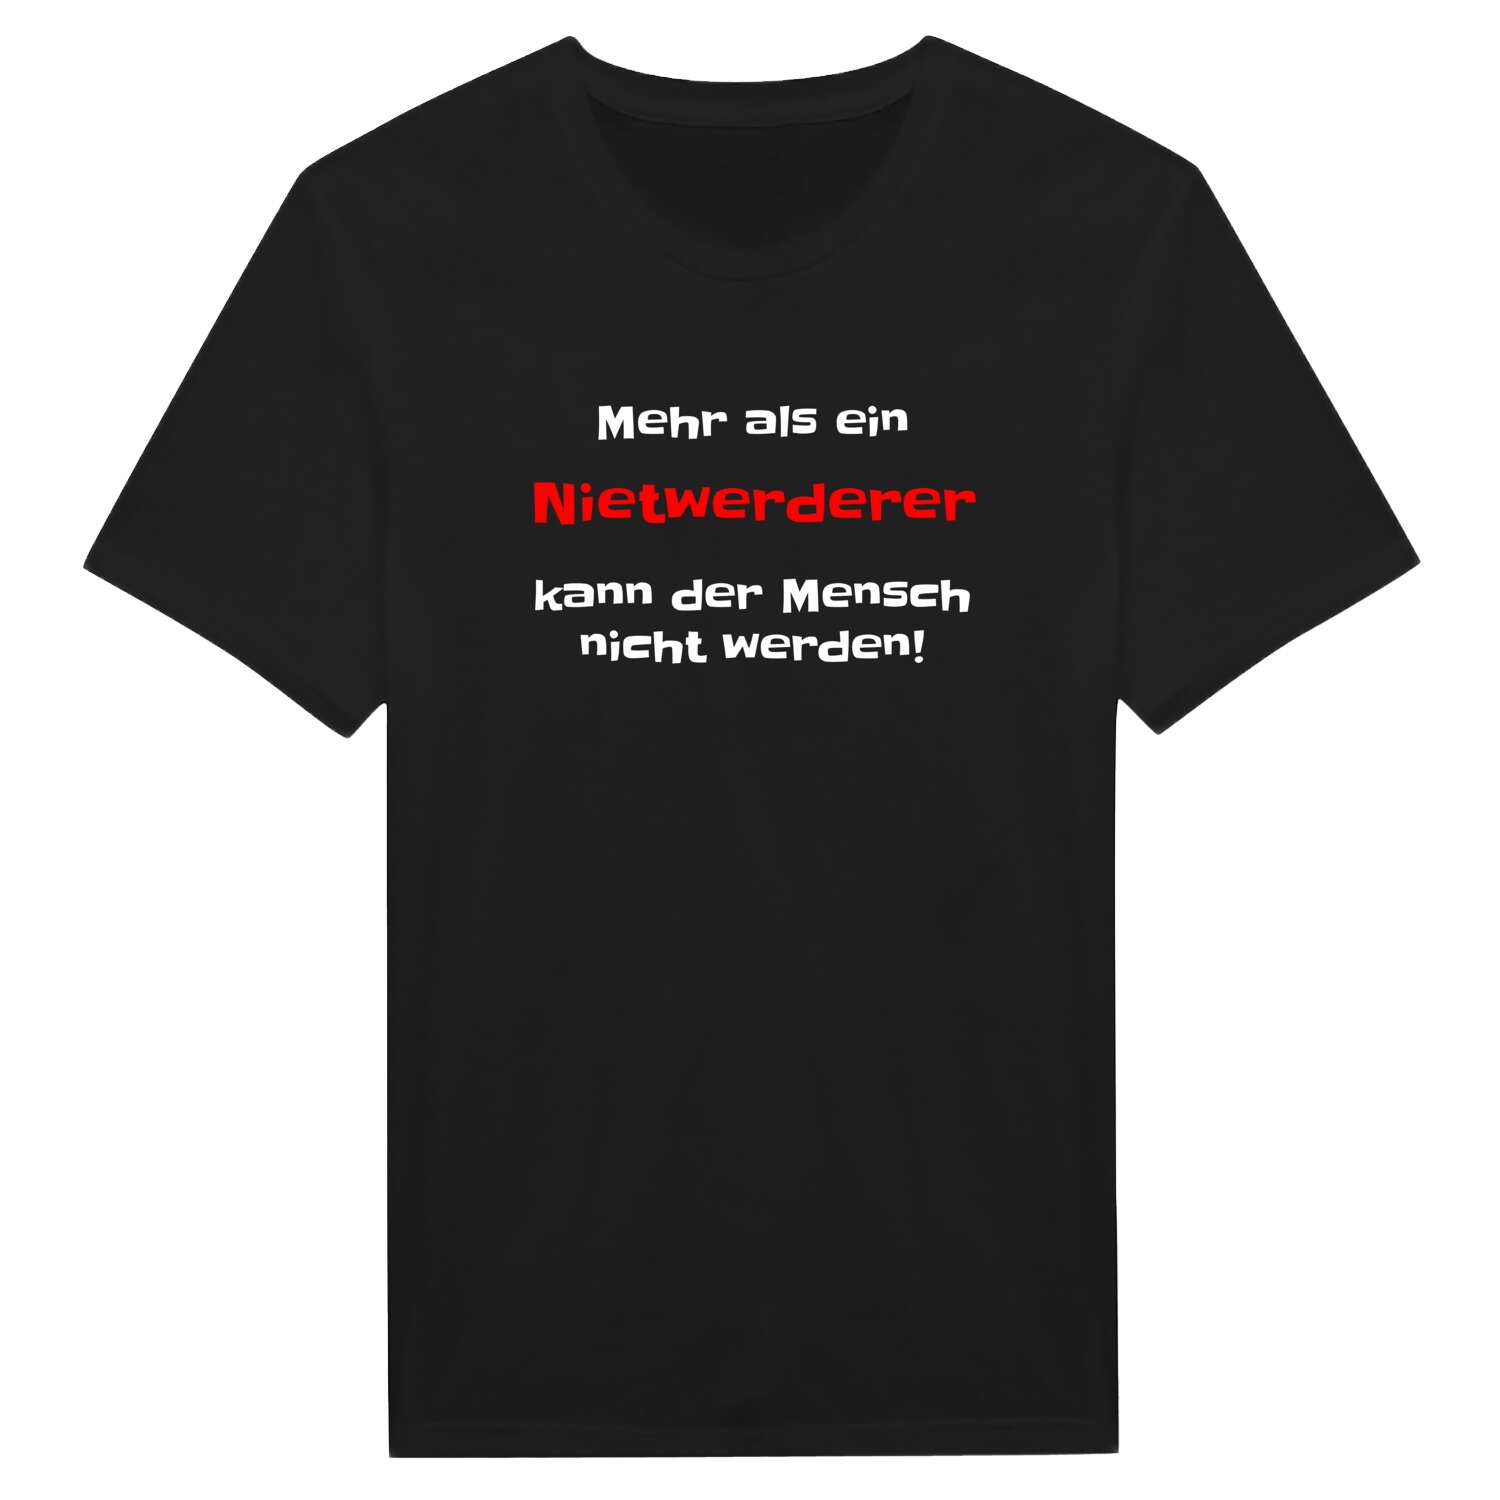 Nietwerder T-Shirt »Mehr als ein«